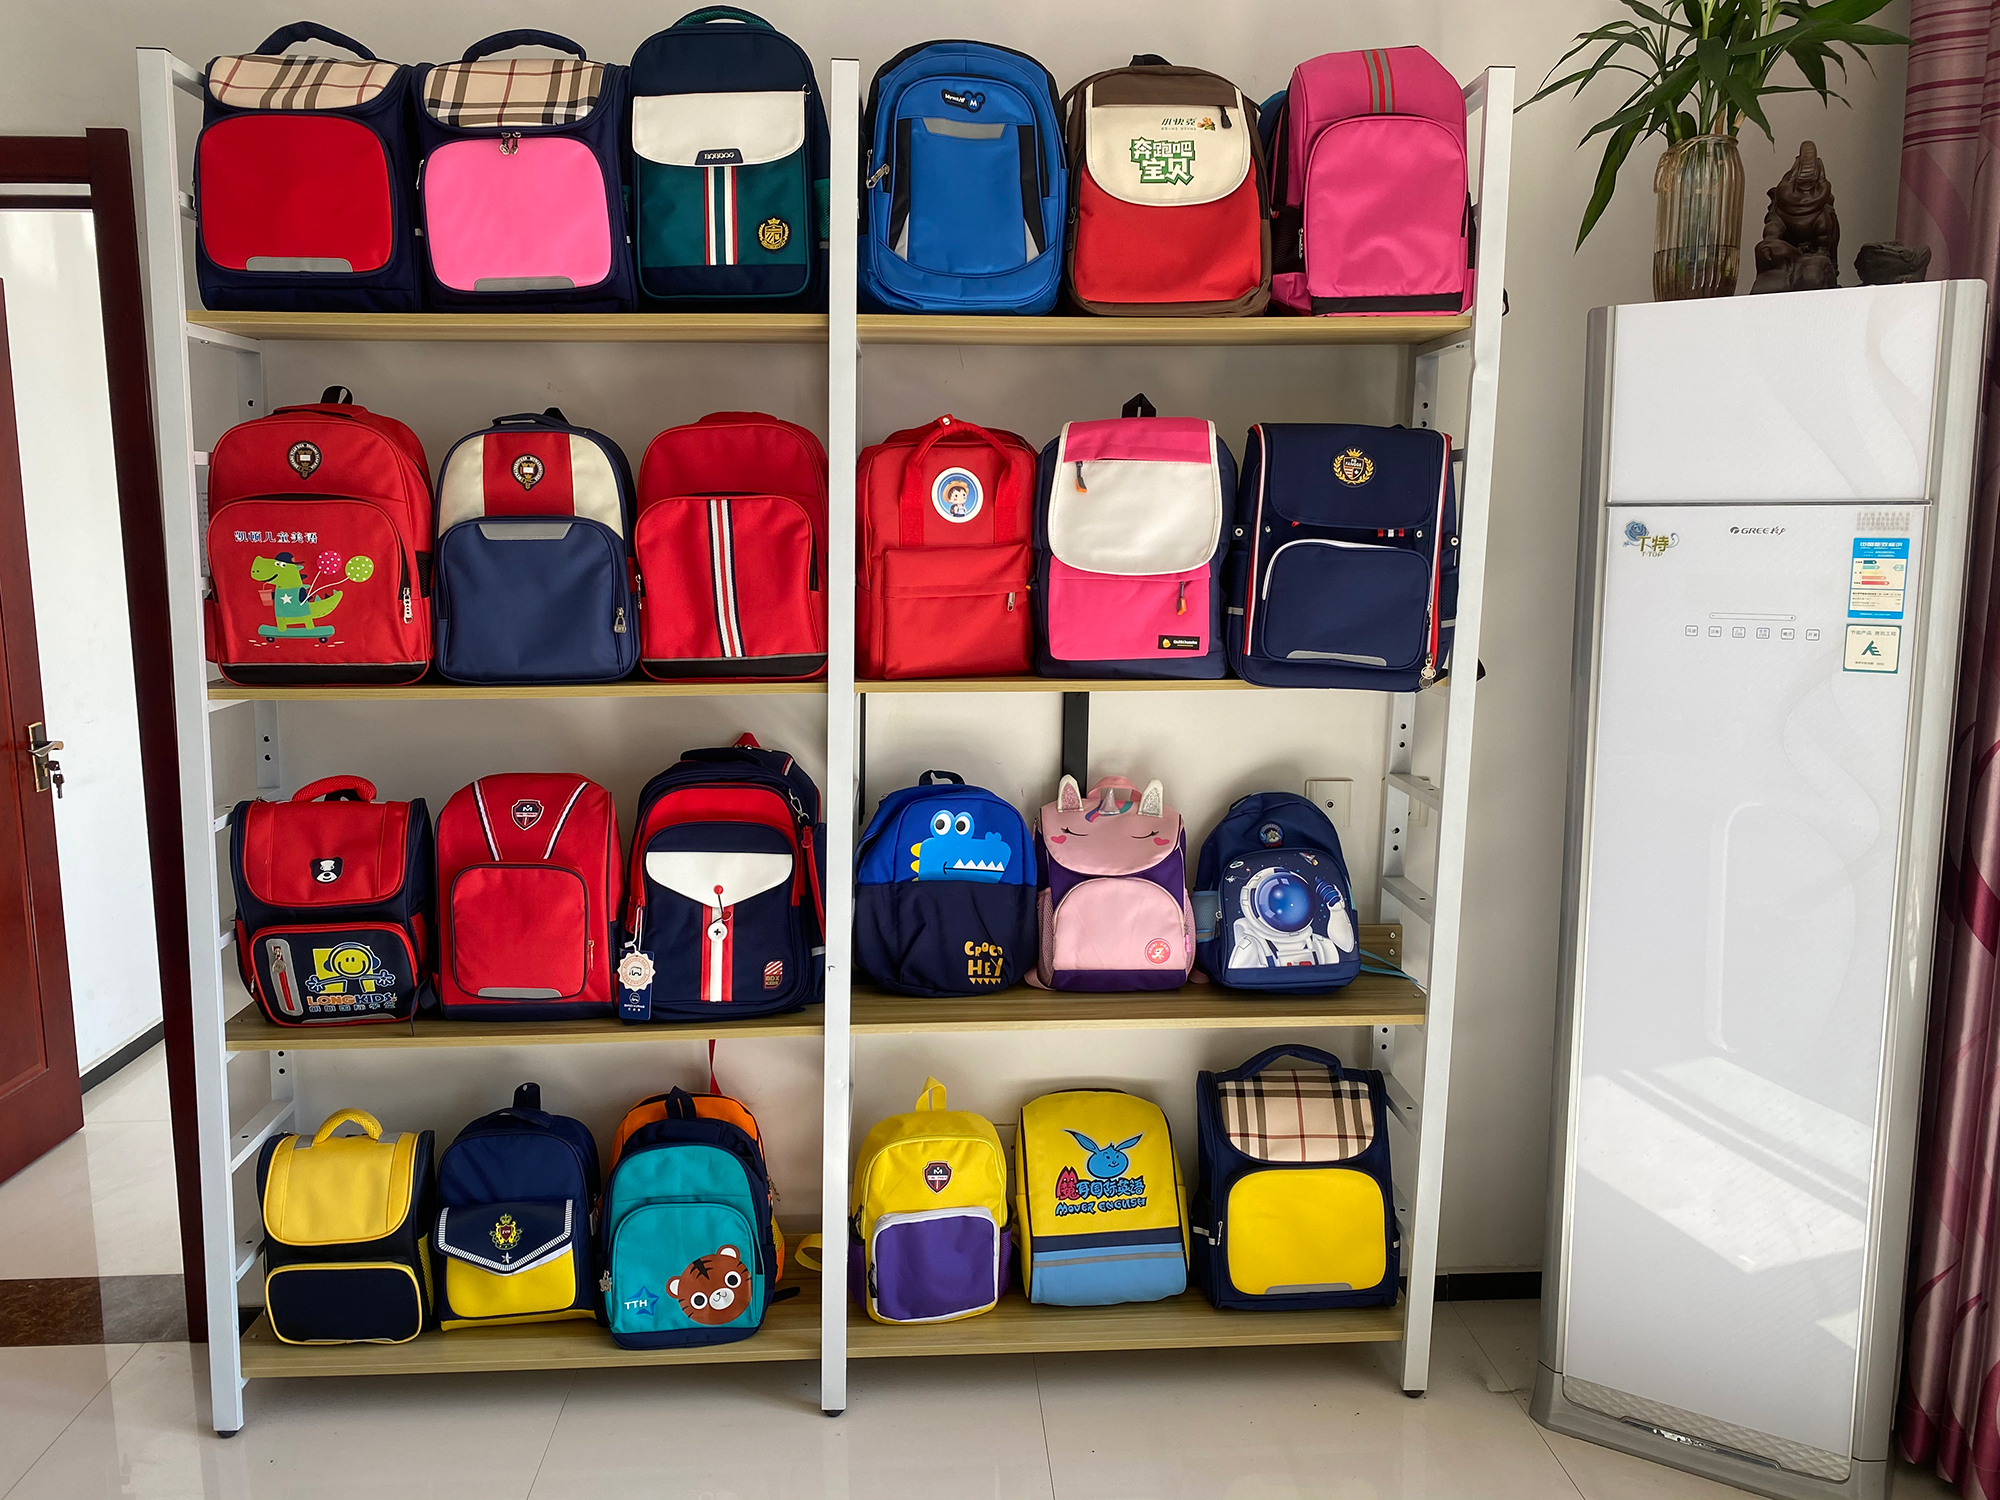 Support-custom-free-sample-Oxford-waterproof-student-backpacks-for-kids-School-Bags-School-Bag-Kids-traveling-back-bag-1601041122169-24